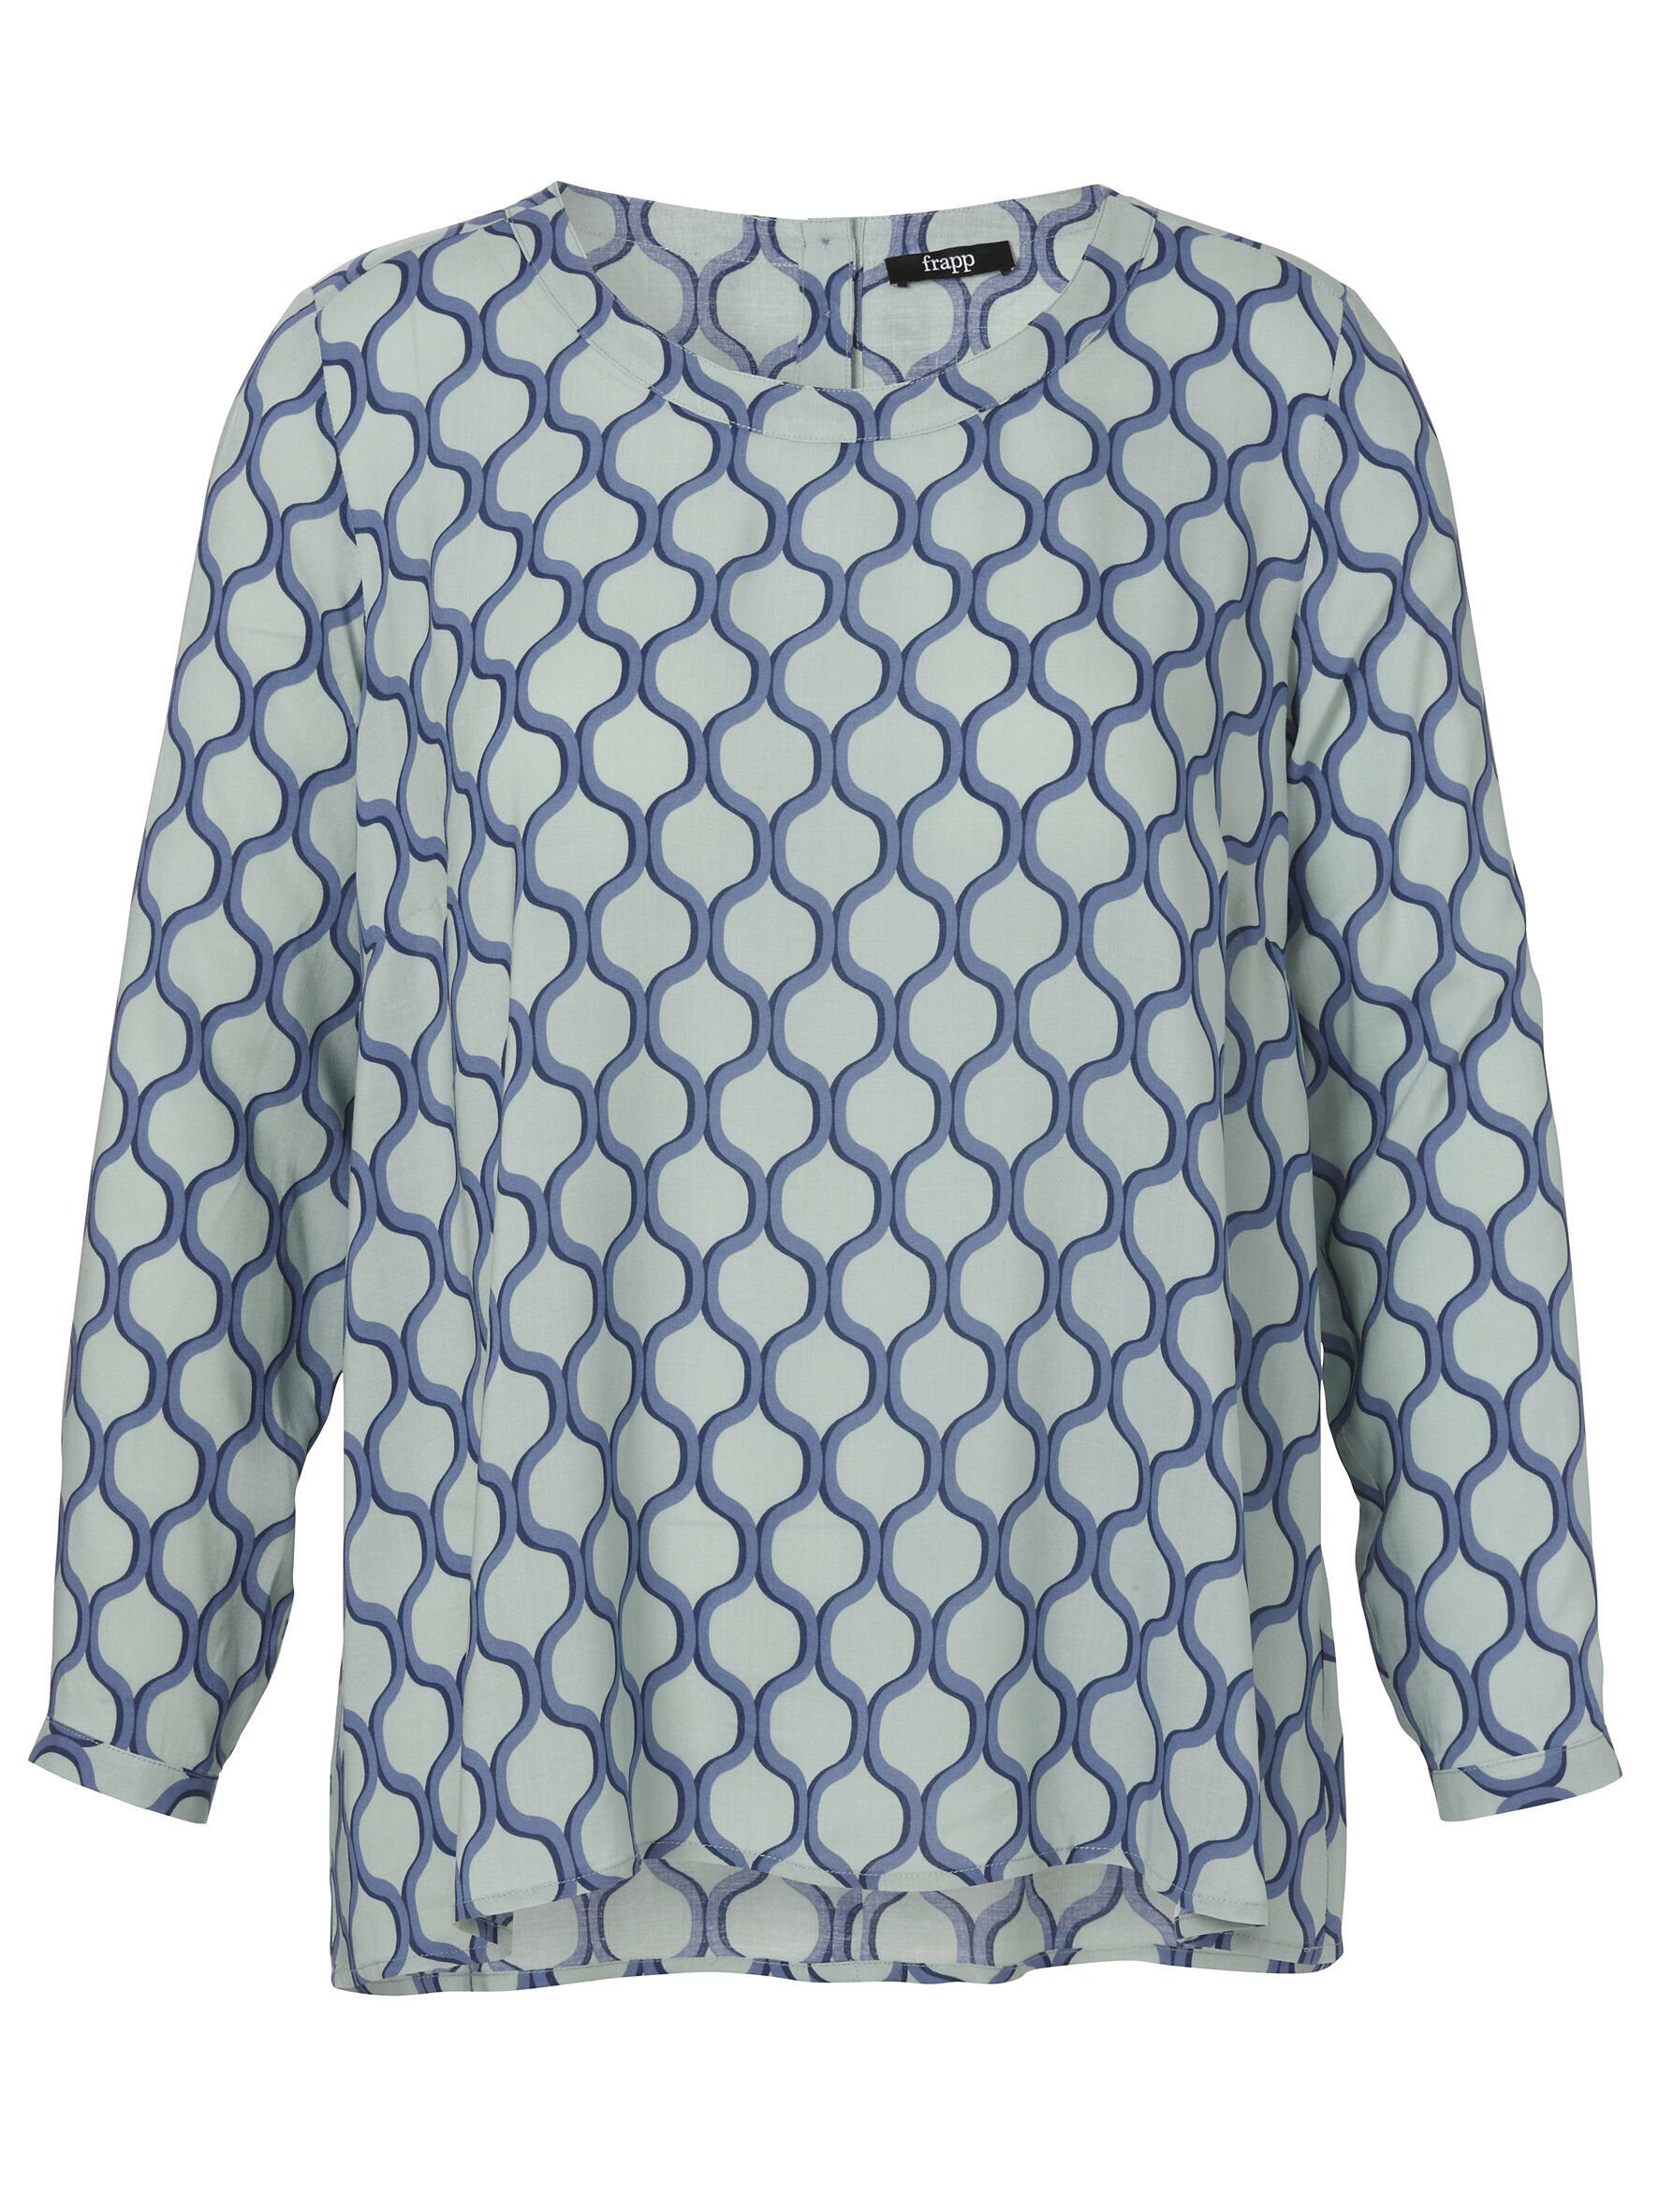 FRAPP Klassische Bluse mit grafischem Allover-Muster